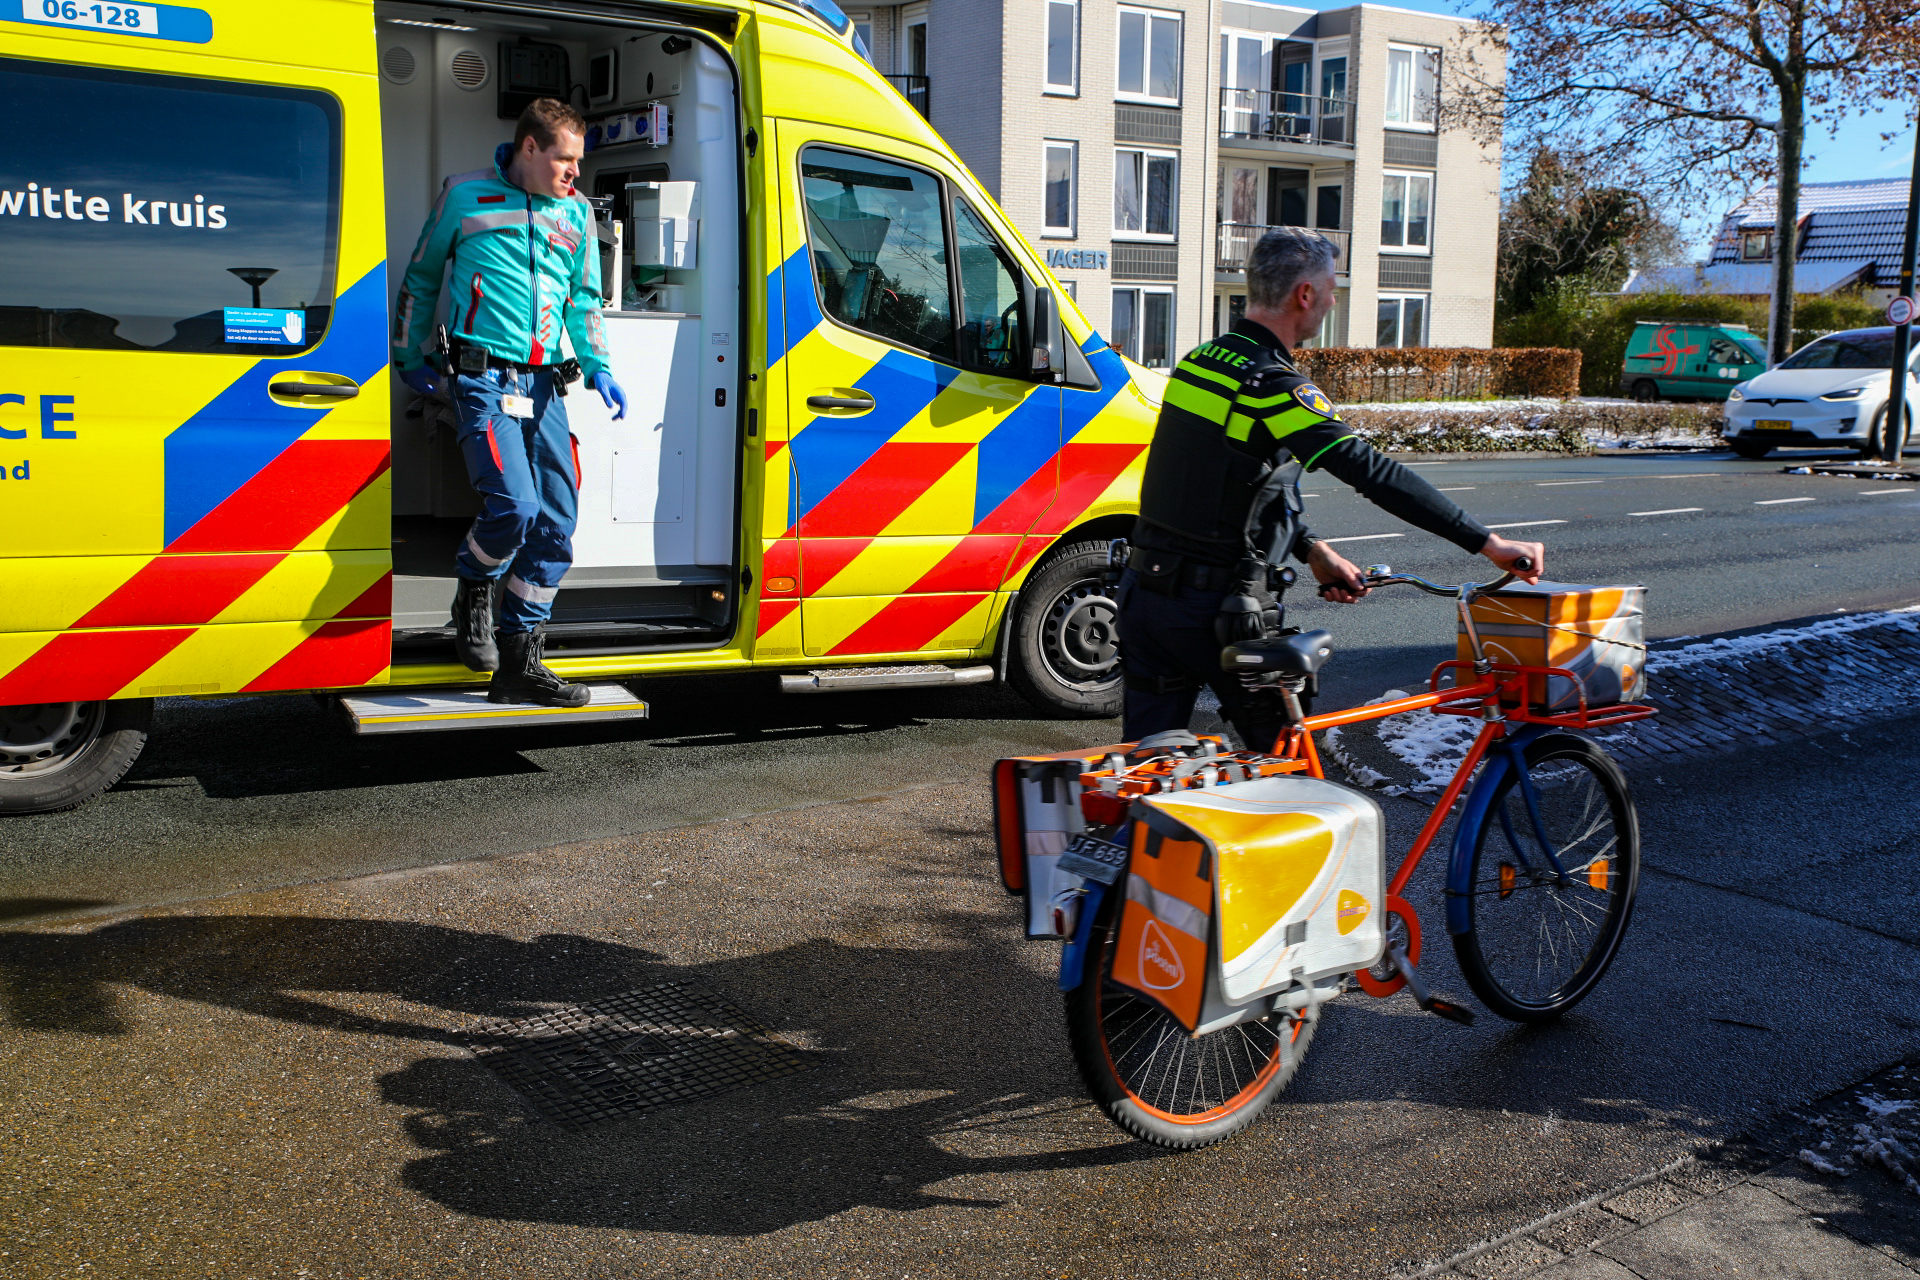 Postbode gewond na botsing met auto in Apeldoorn